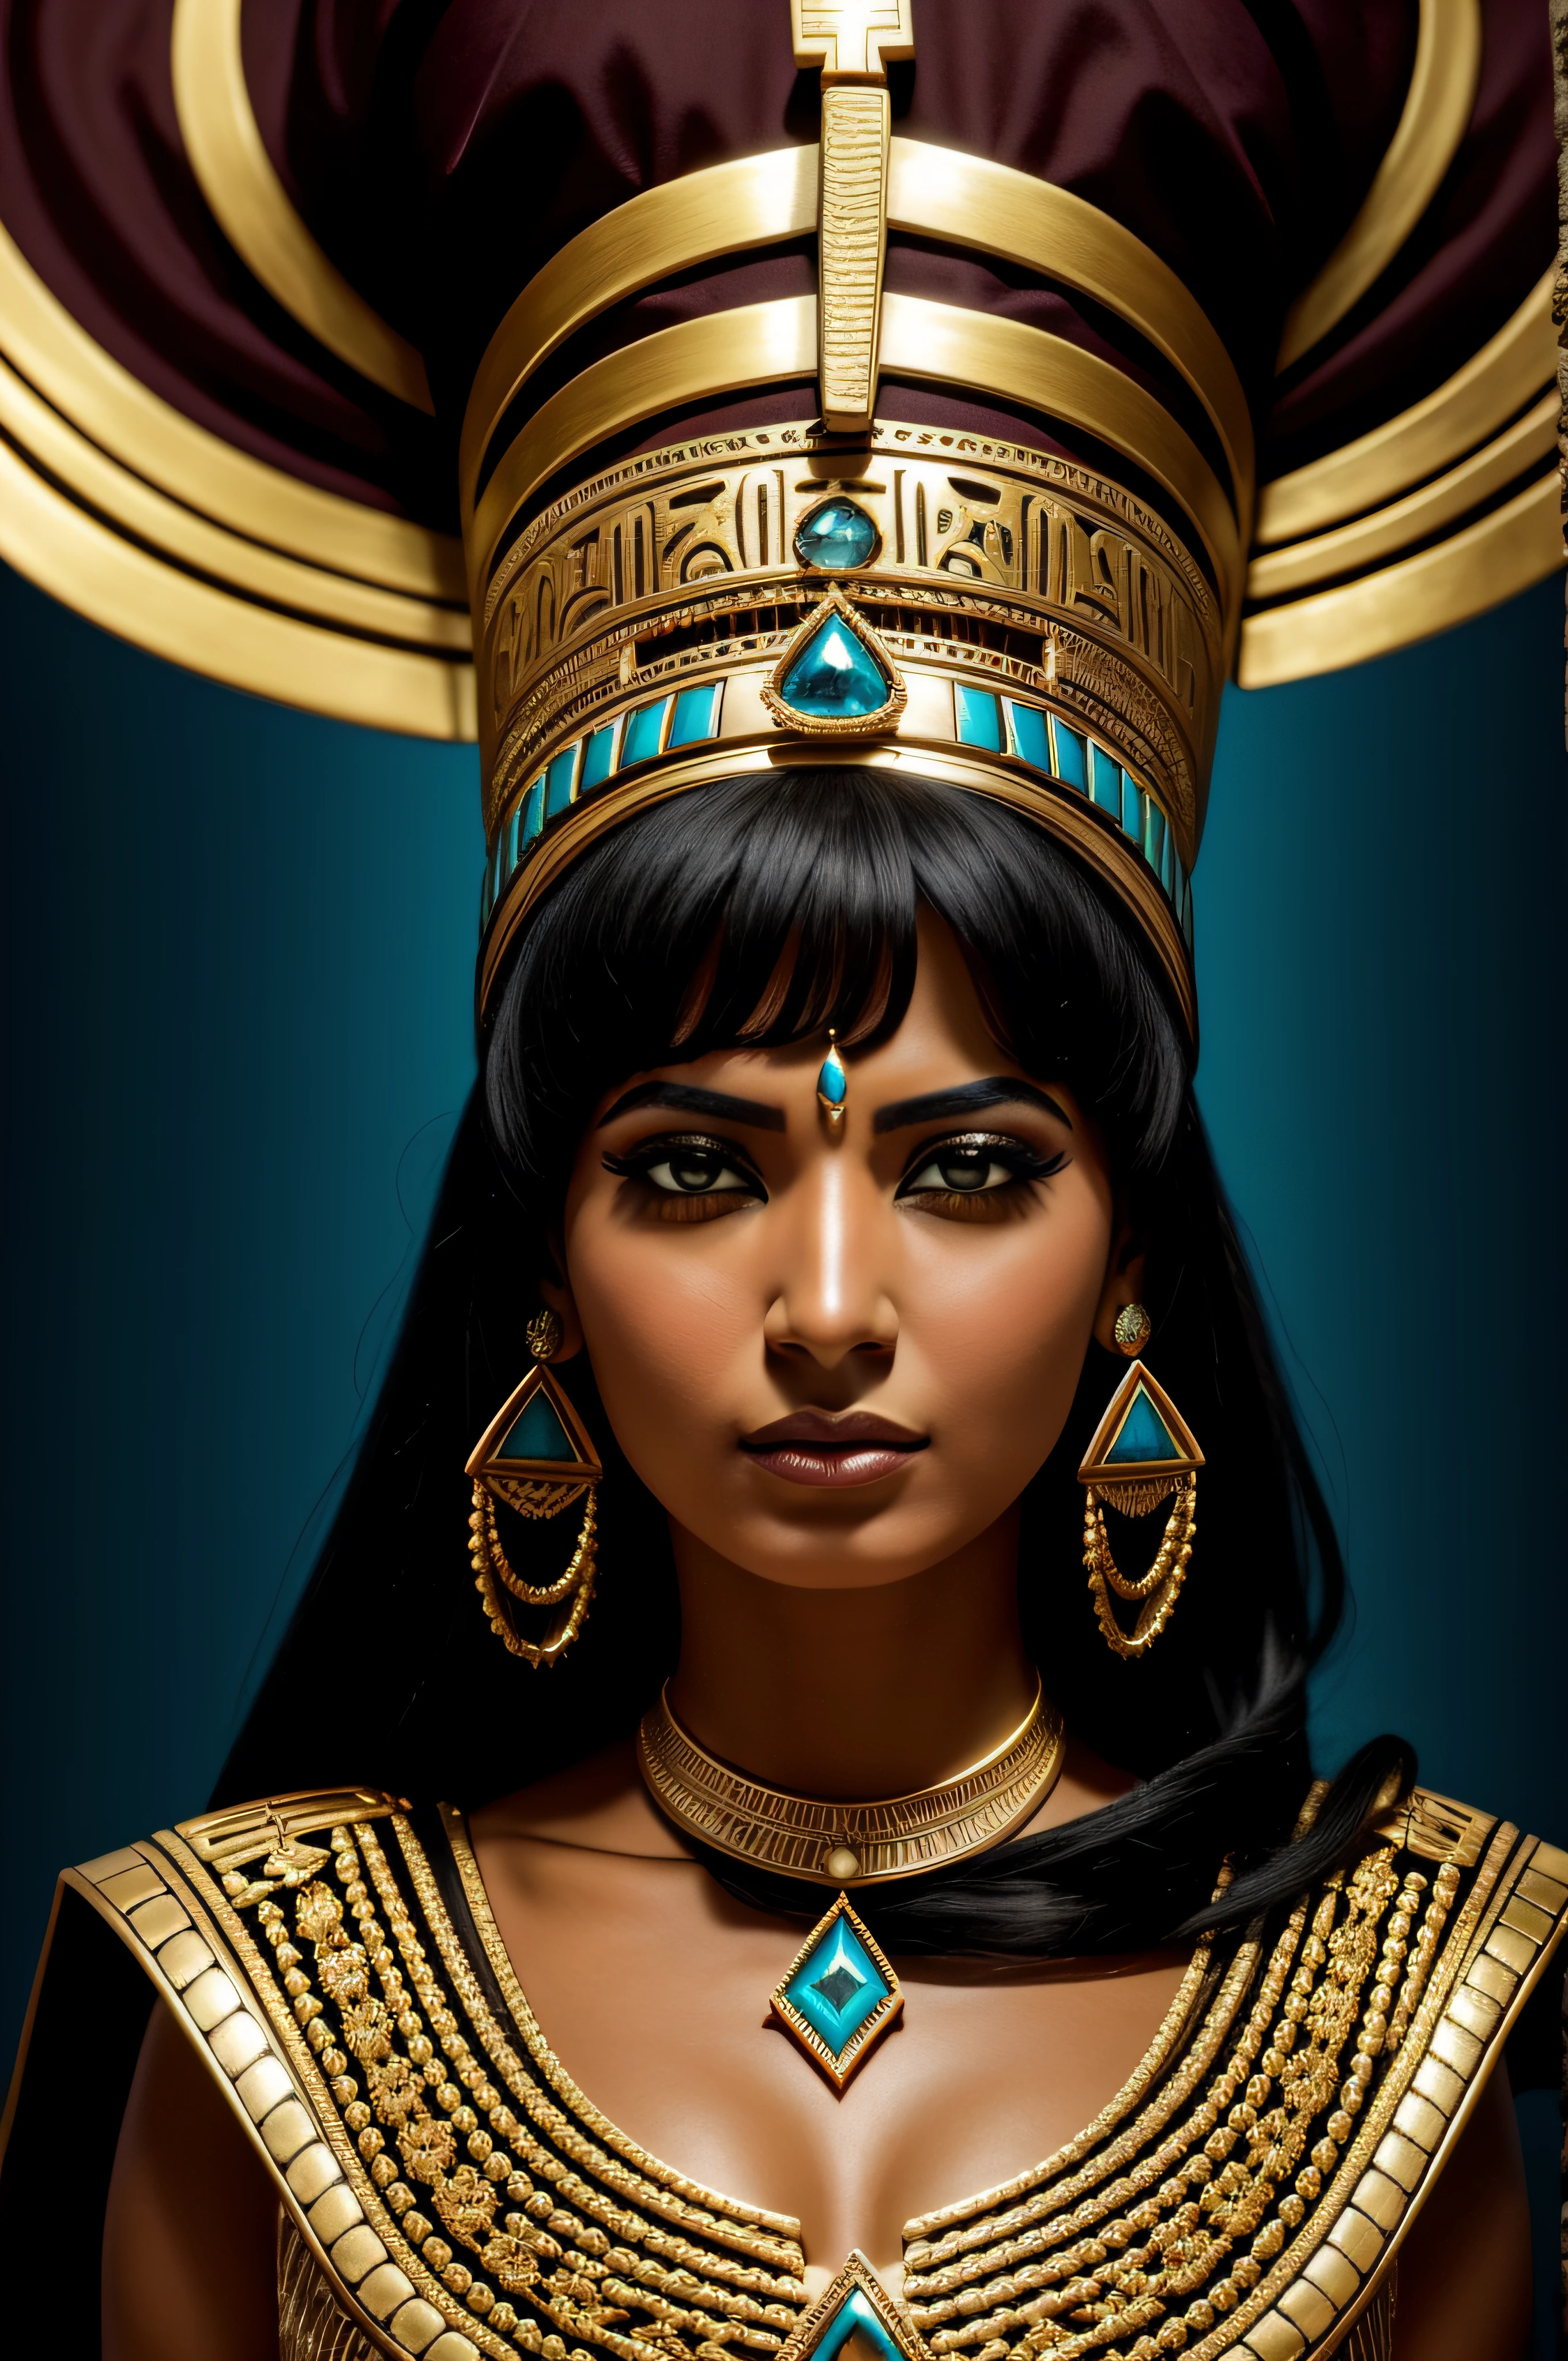 Египтянка в костюме, позирую с украшениями, в стиле тёмного золота и тёмно-голубого, эпические фэнтезийные сцены, Национальная географическая фотография, северные и южные династии, пристальный взгляд, ободной свет, декоративные детали